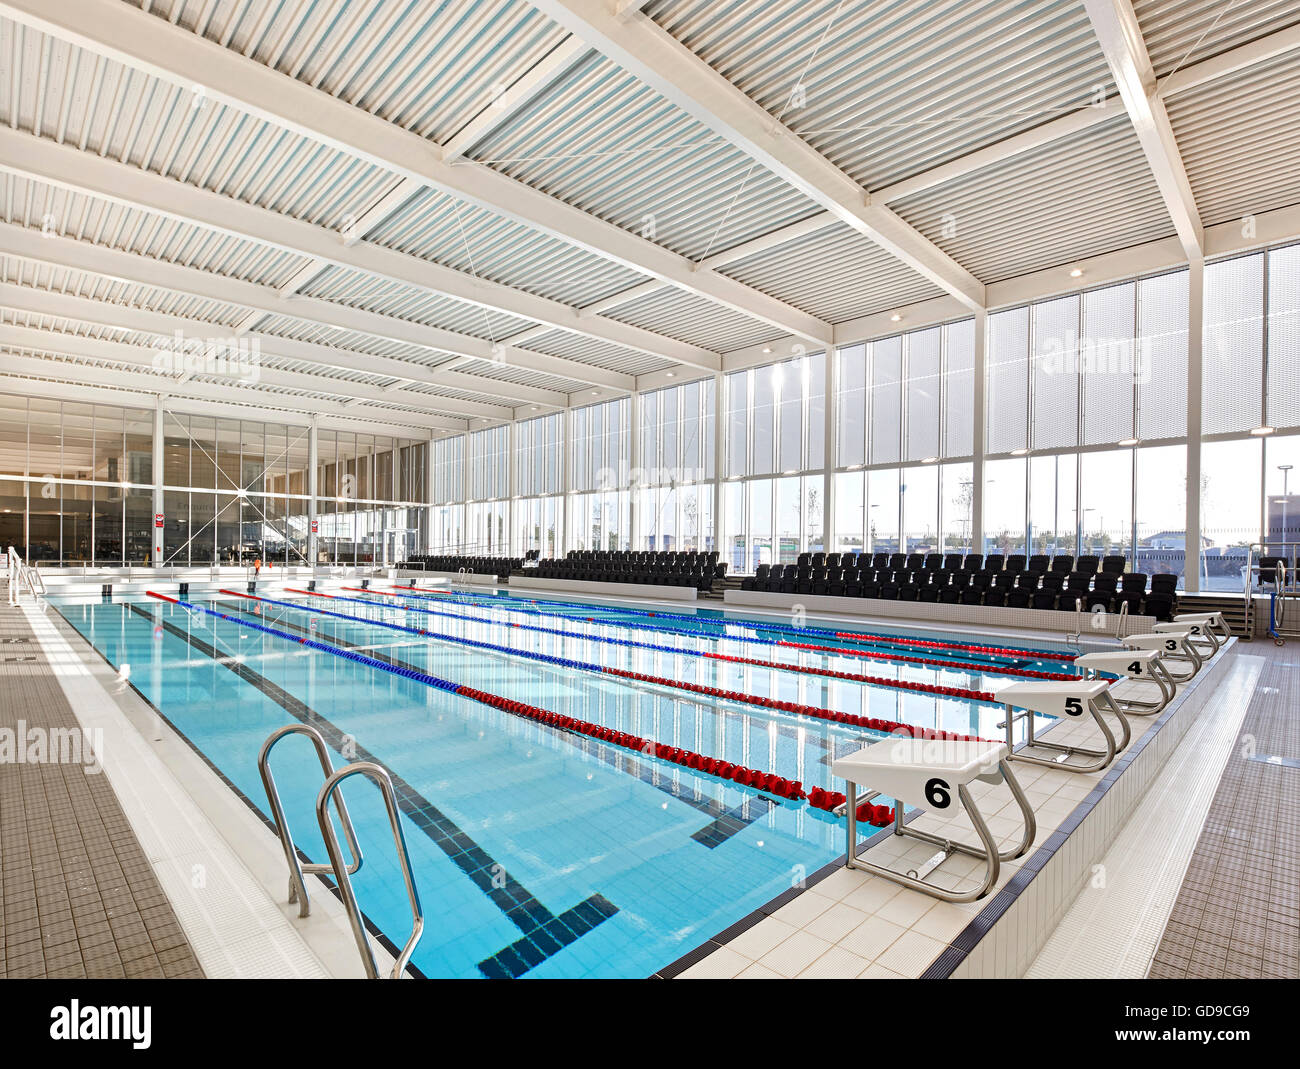 Sportzentrum Hallenbad als Teil der Gemeinschaft. Hebburn Central, Hebburn, Vereinigtes Königreich. Architekt: Friedrich Braun, 2016. Stockfoto